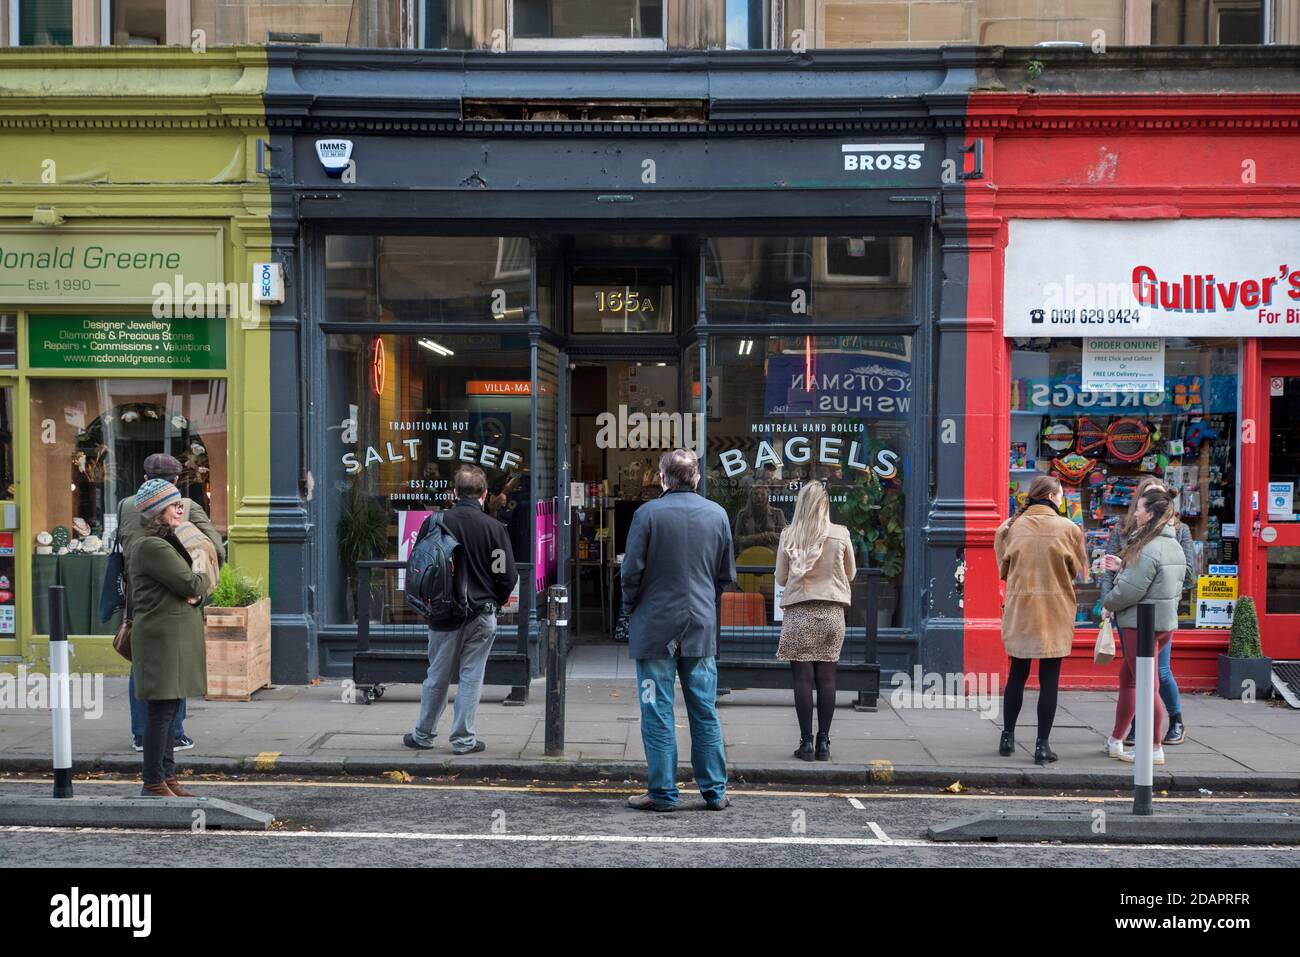 Coda socialmente distanziata durante la pandemia del coronavirus che attende fuori da un negozio di bagel a Bruntsfield, Edimburgo, Scozia, Regno Unito. Foto Stock